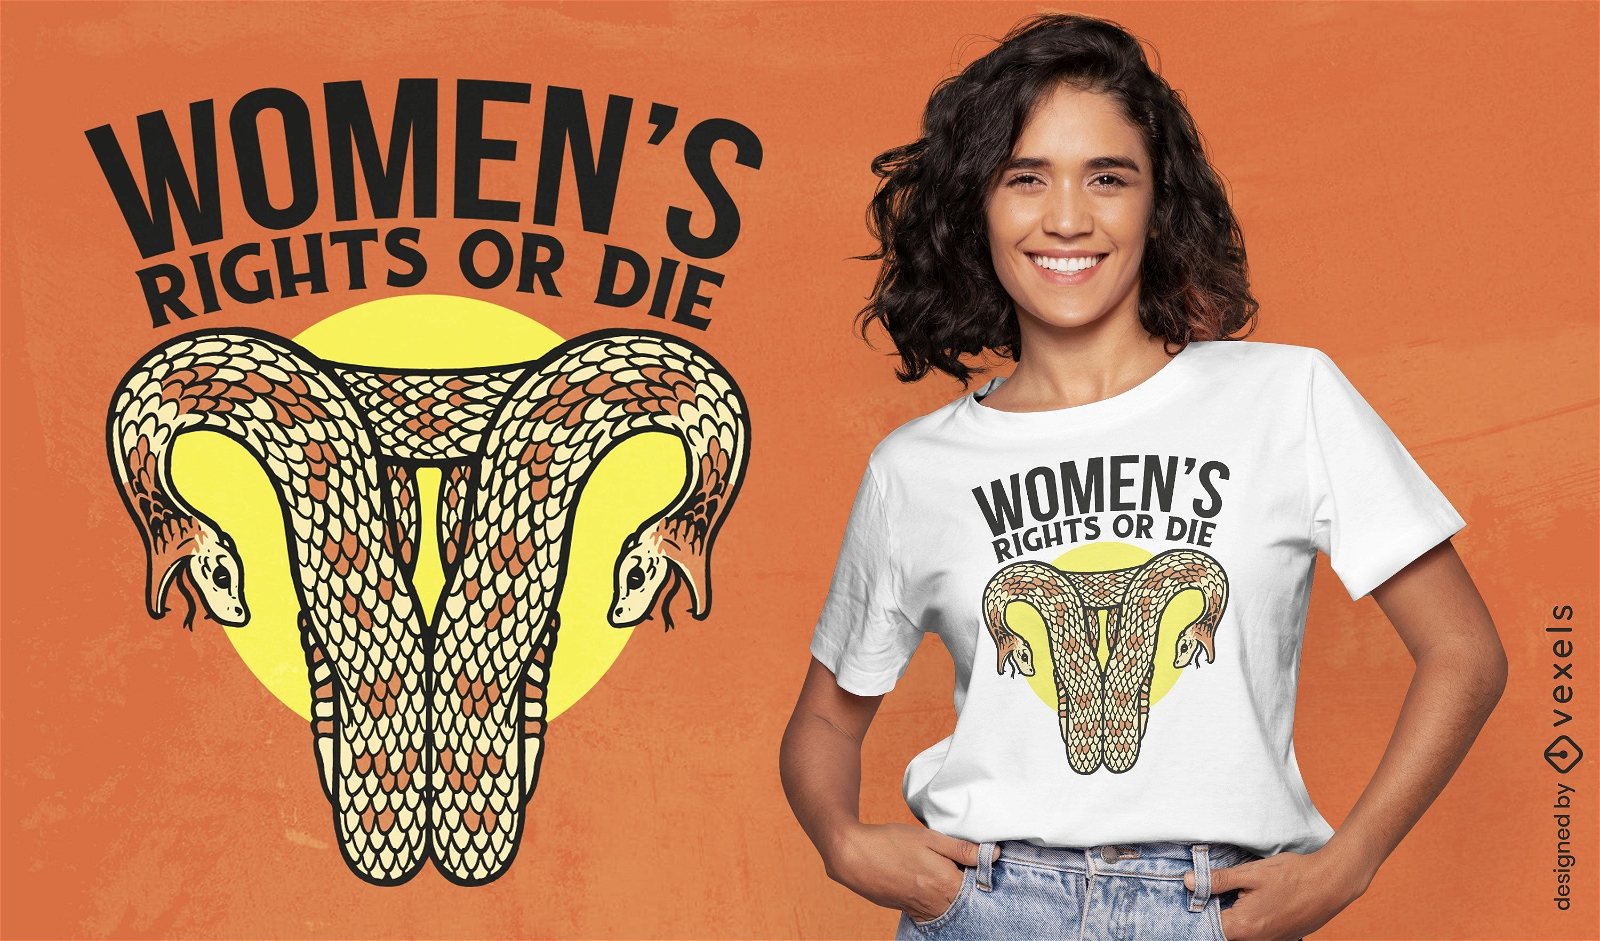 Dise?o de camiseta de derechos femeninos de ?tero en forma de serpiente.